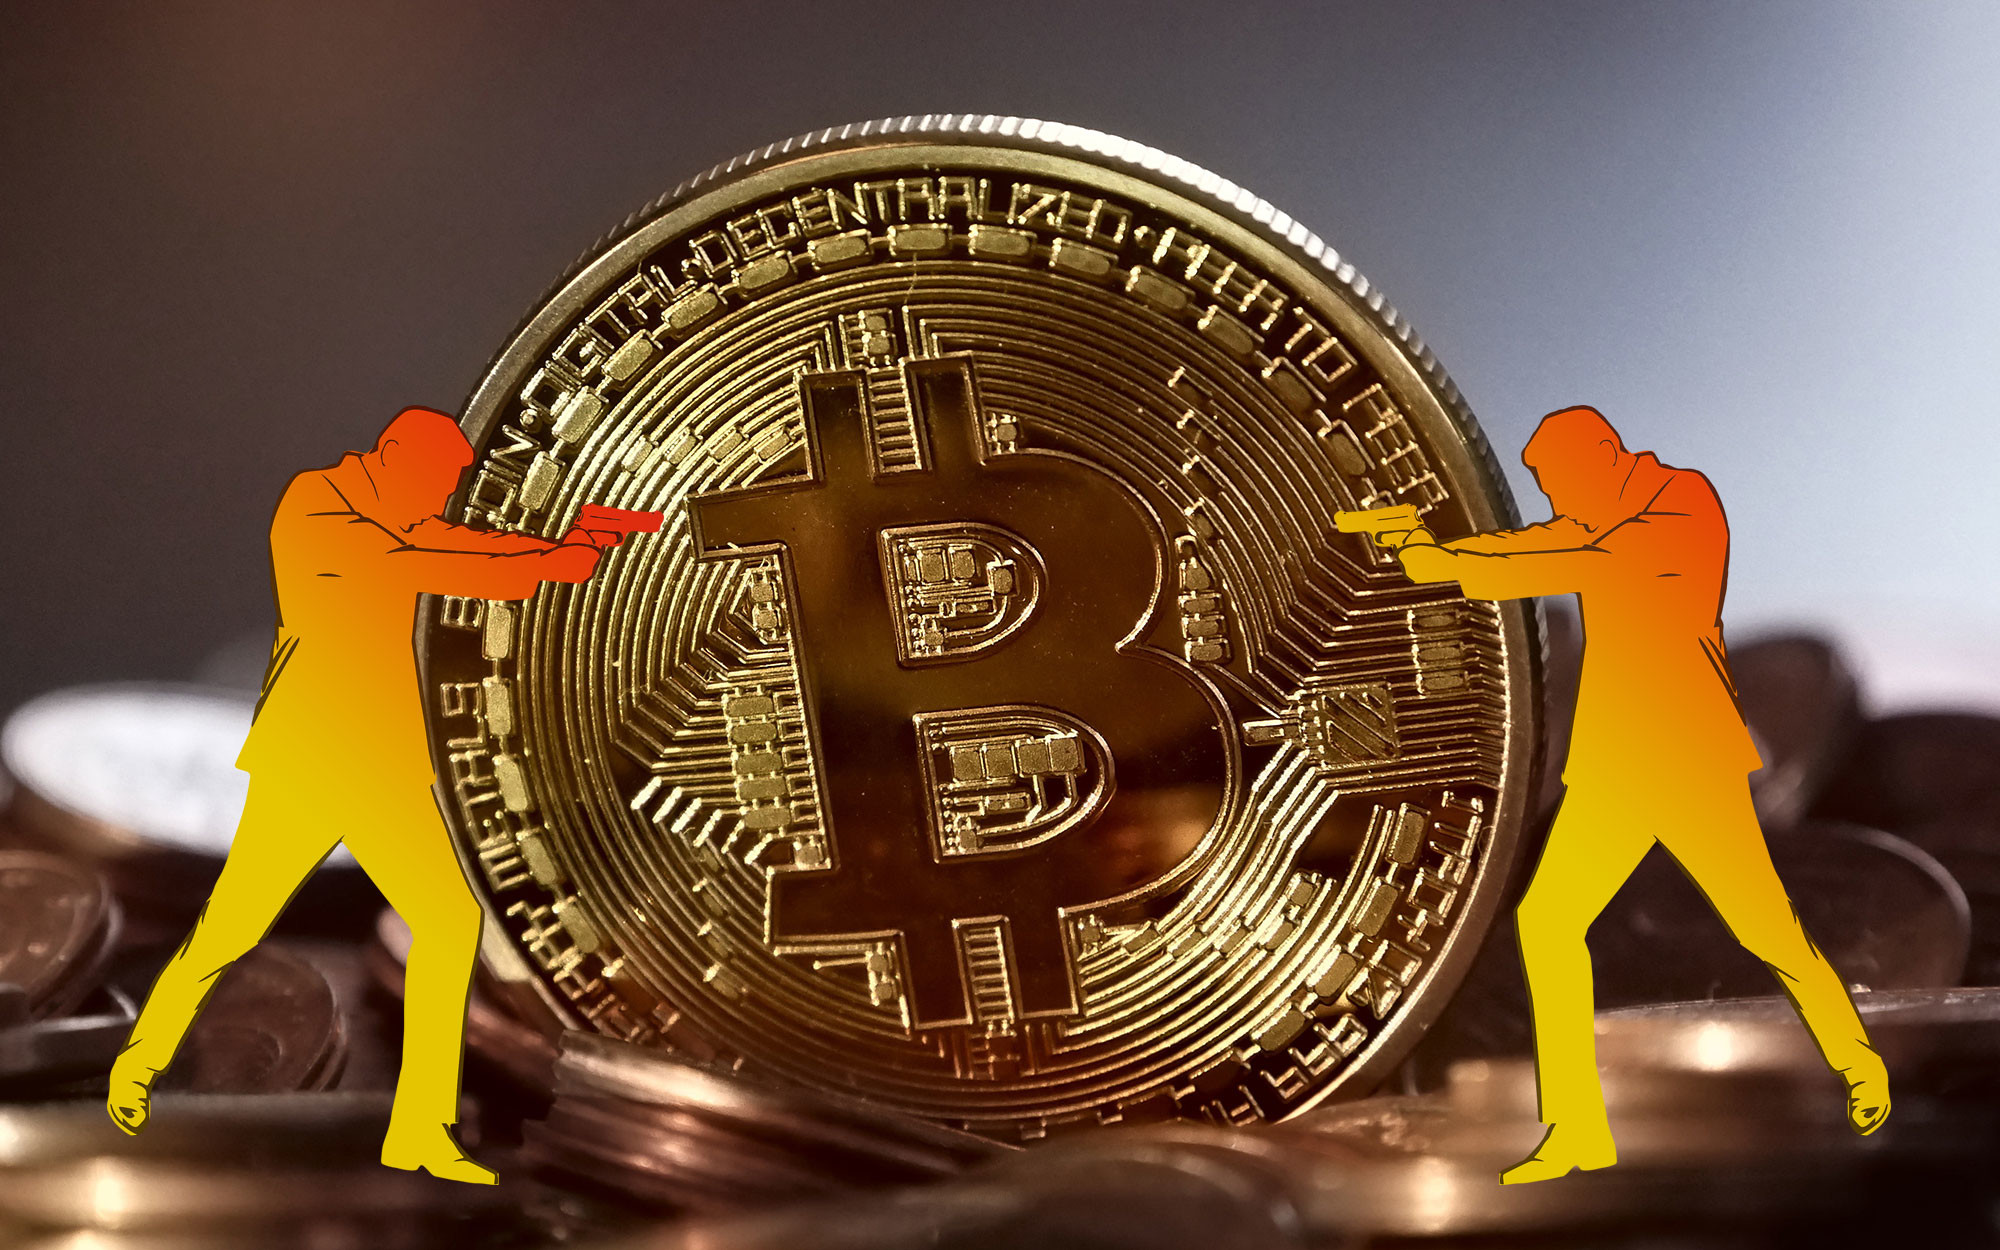 frihedsaktivisten bitcoins worth